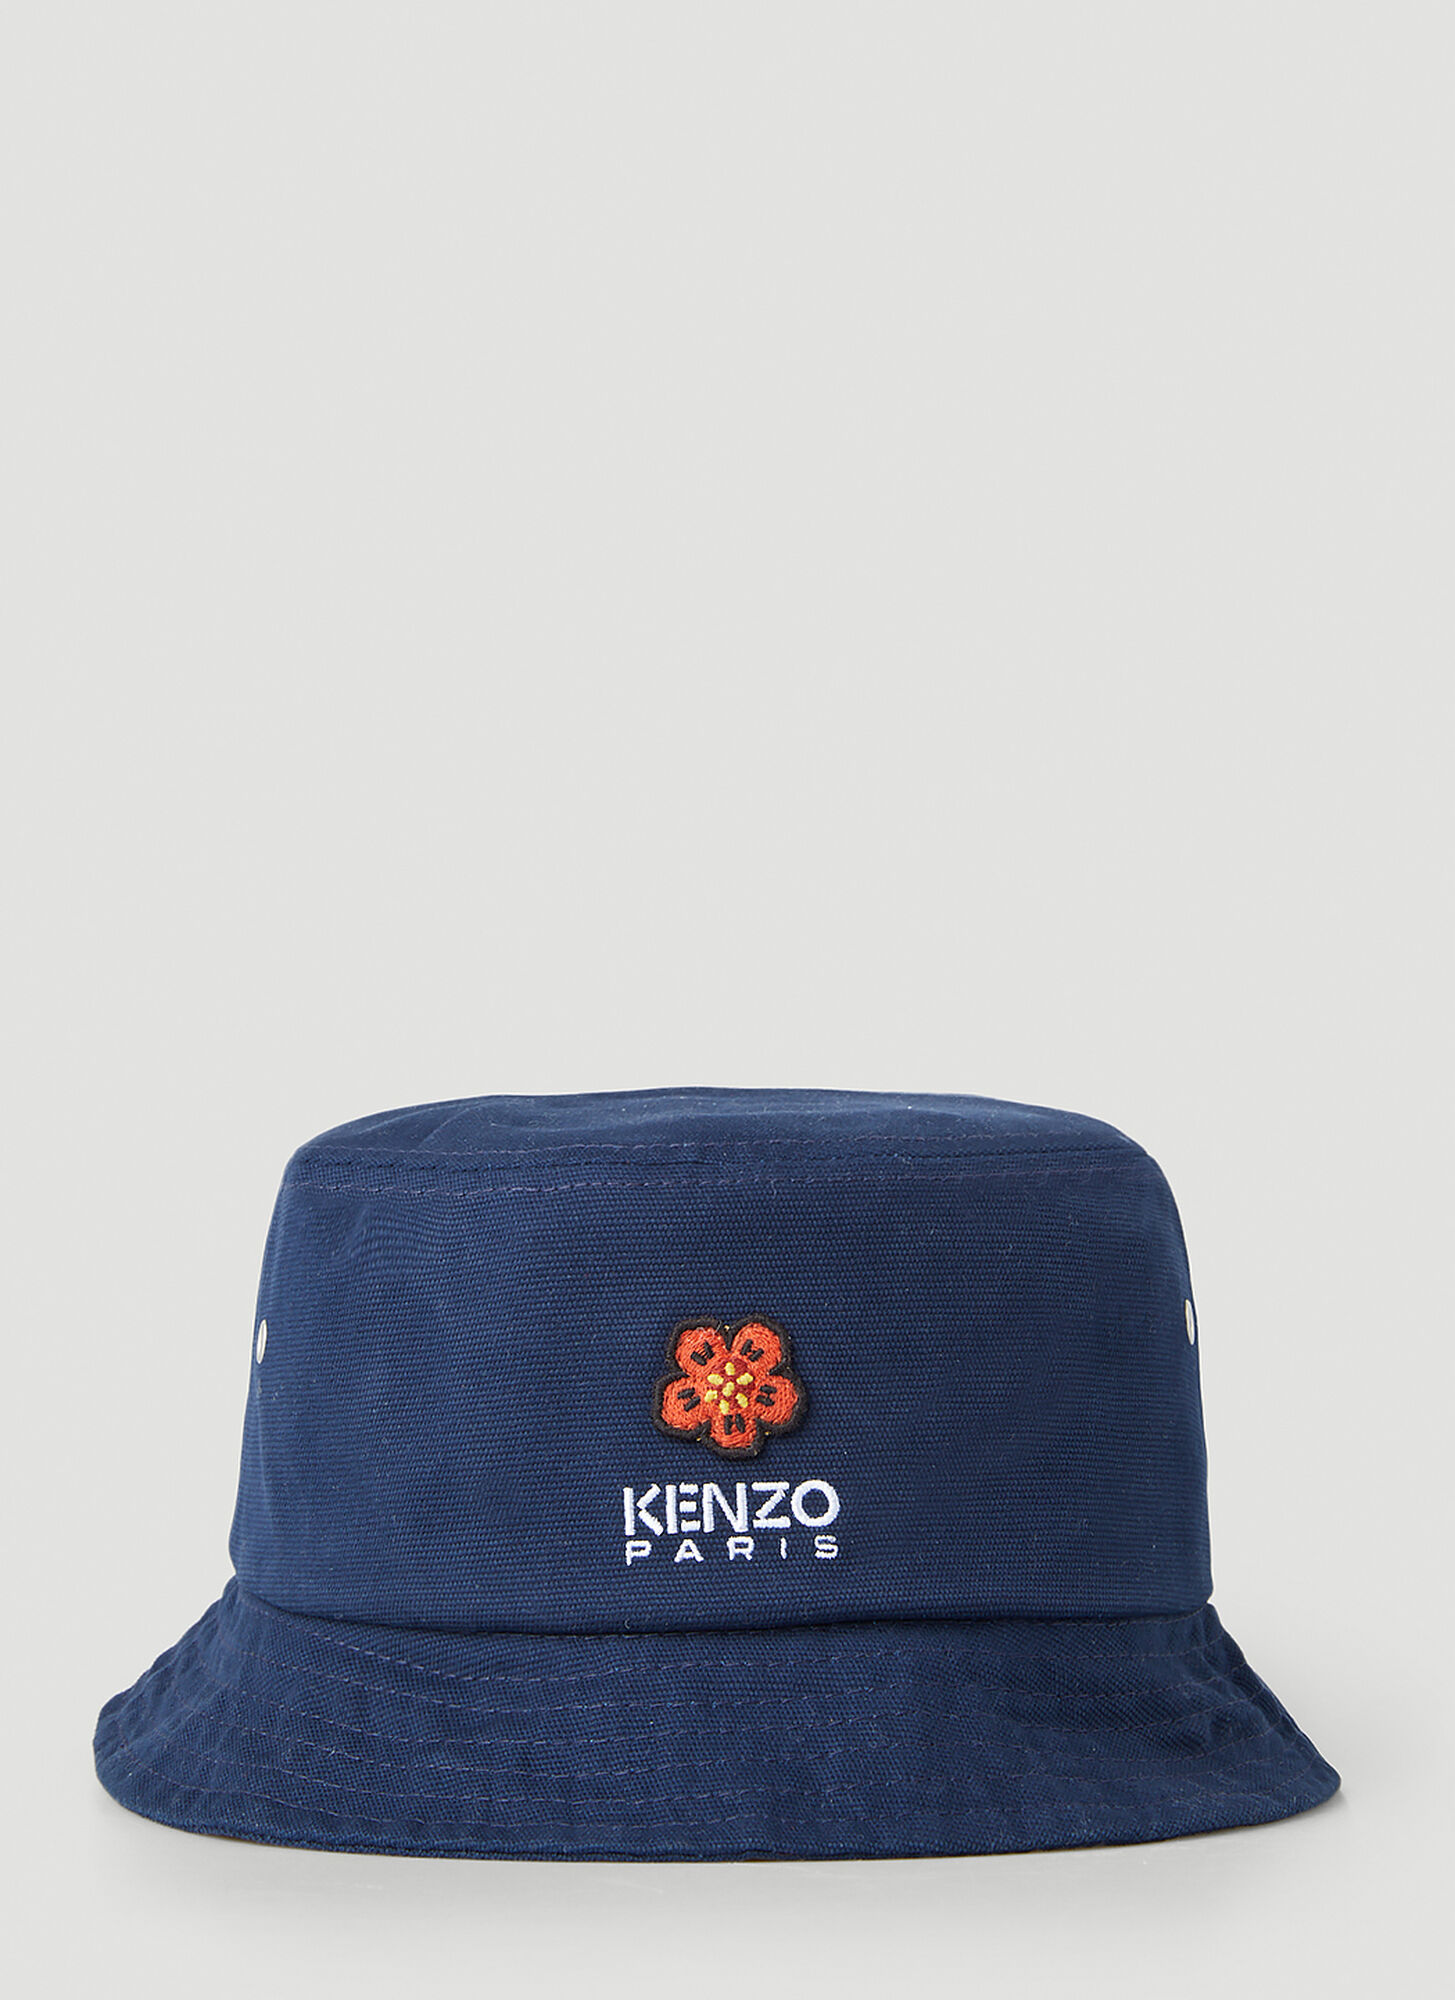 Kenzo Flower Embroidery Bucket Hat Female Blue